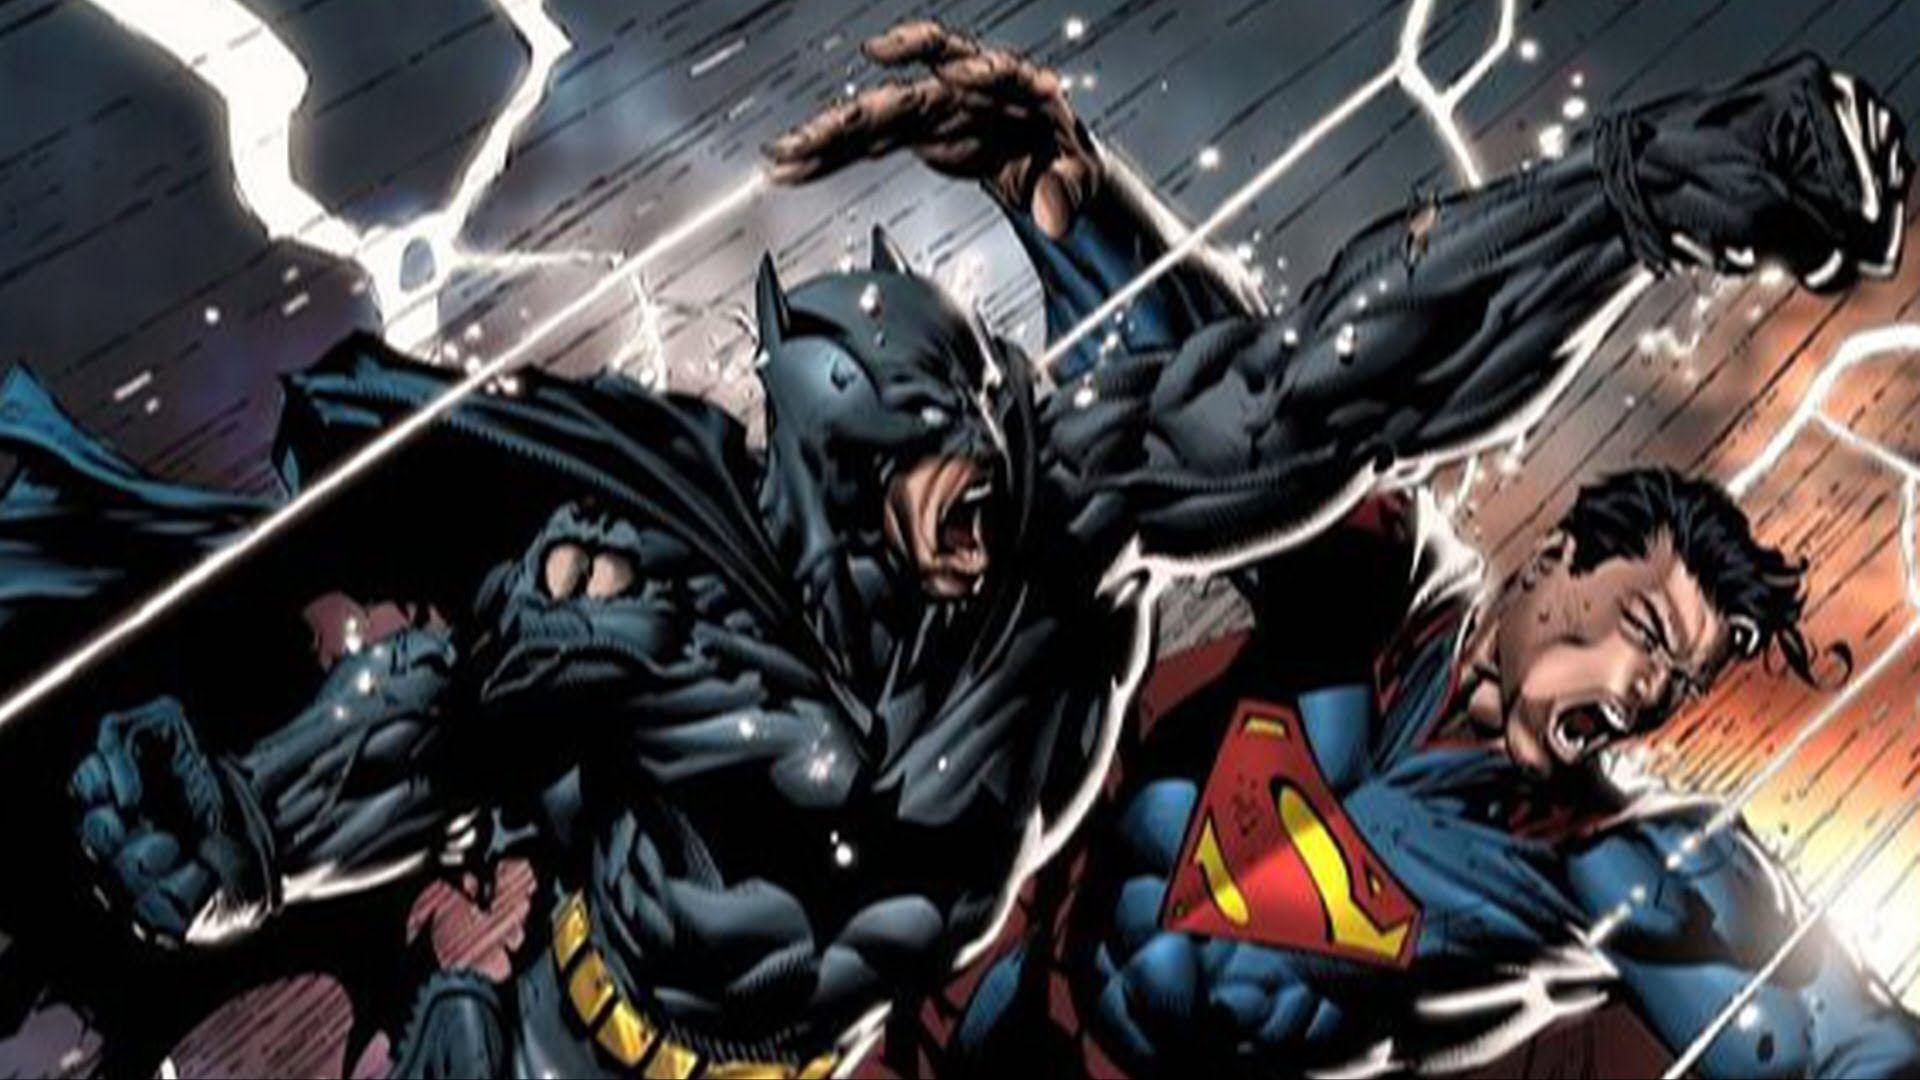 INJUSTICE BATMAN WALLPAPER❤ : r/batman